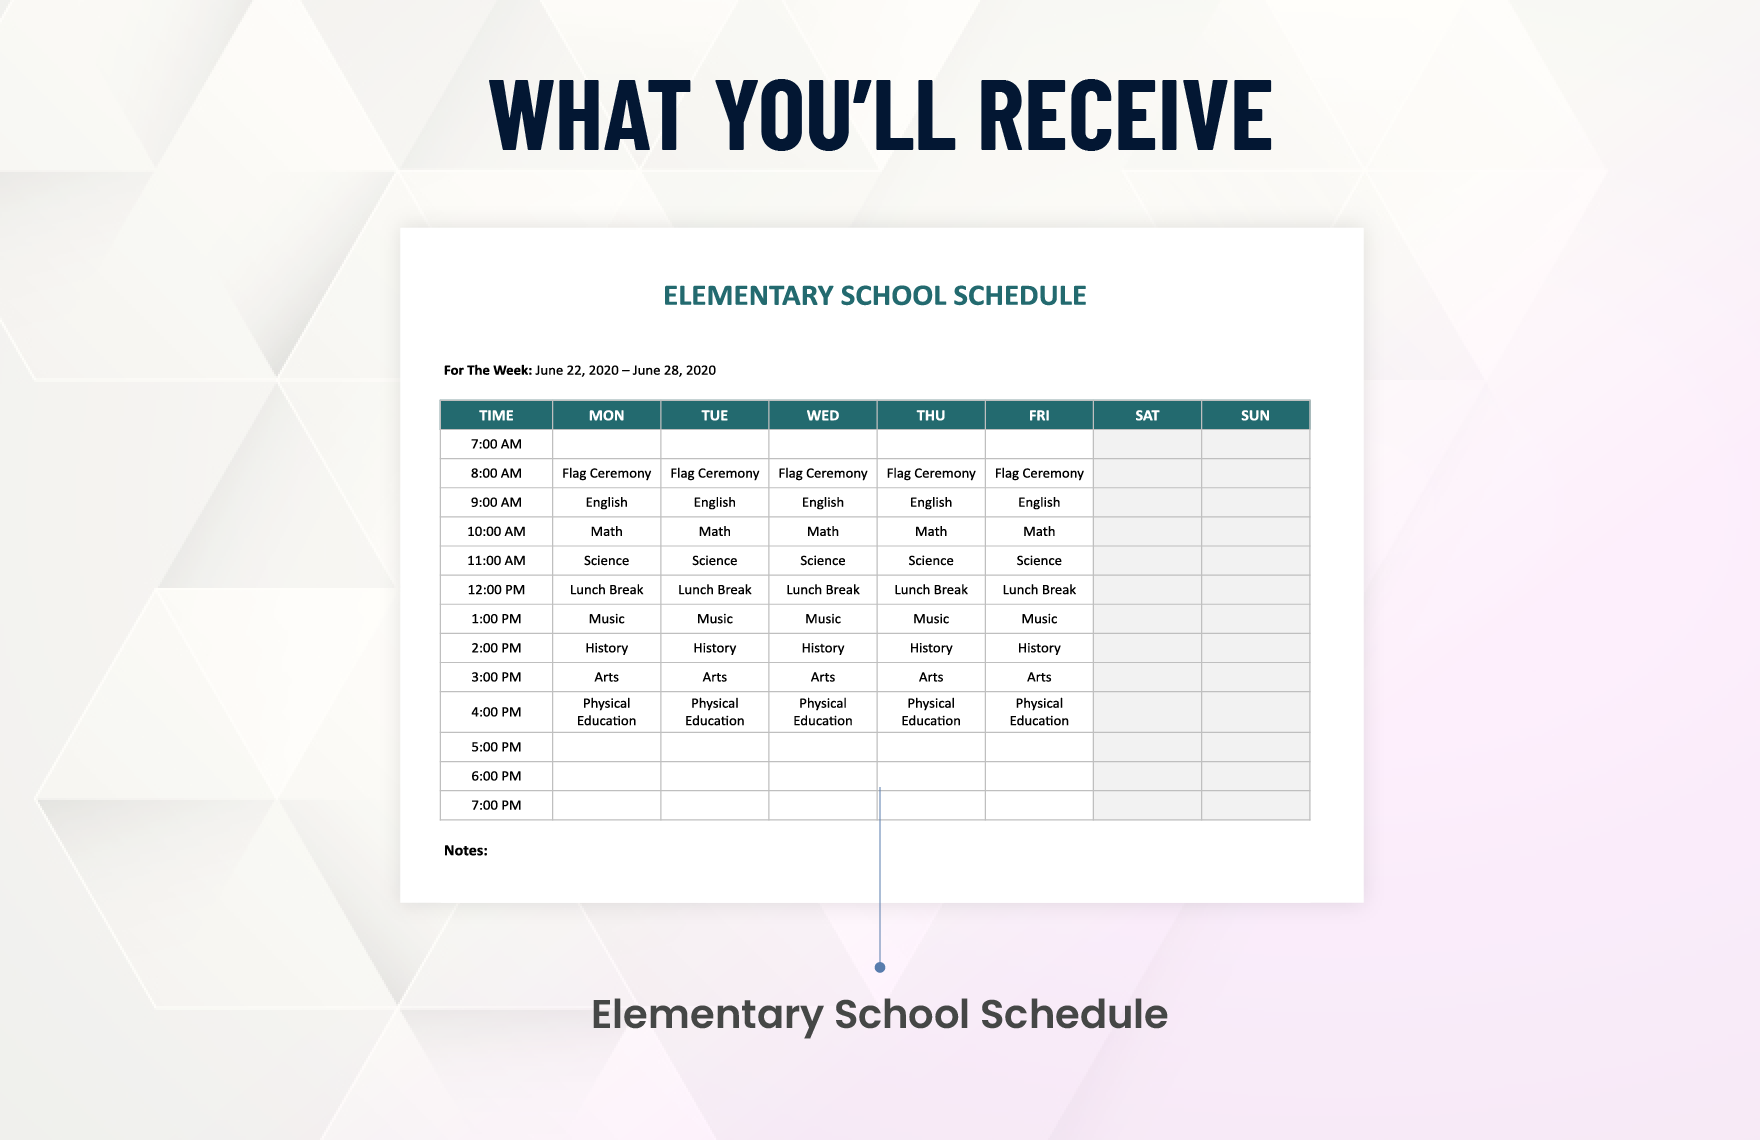 Elementary School Schedule Template